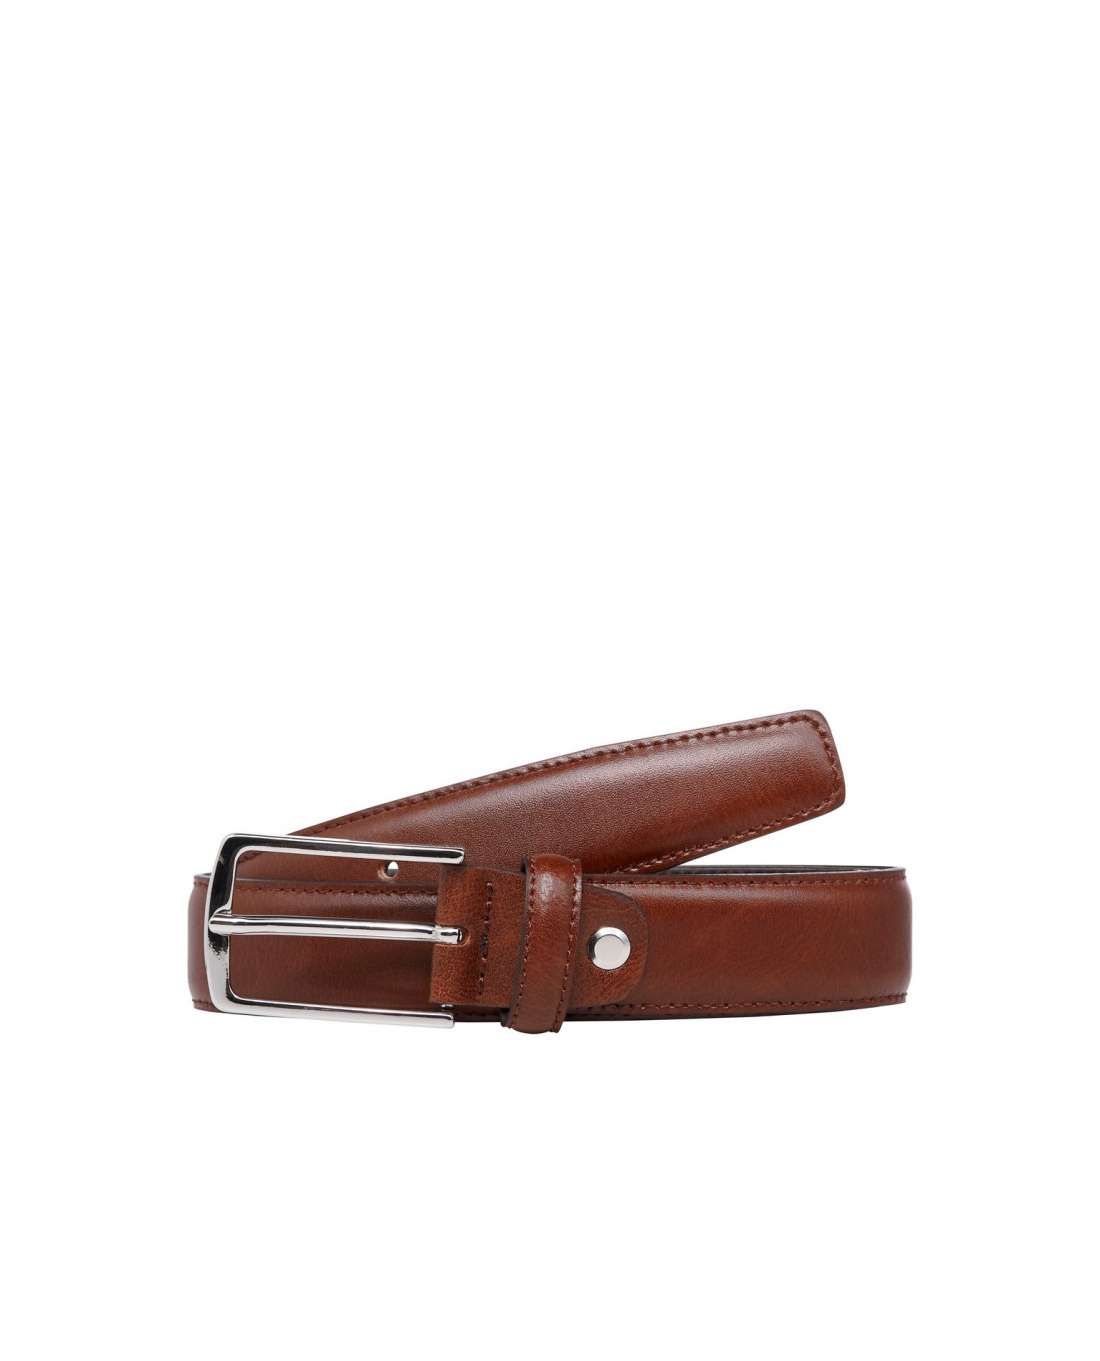 Christopher Cognac Leather Belt Jack & Jones